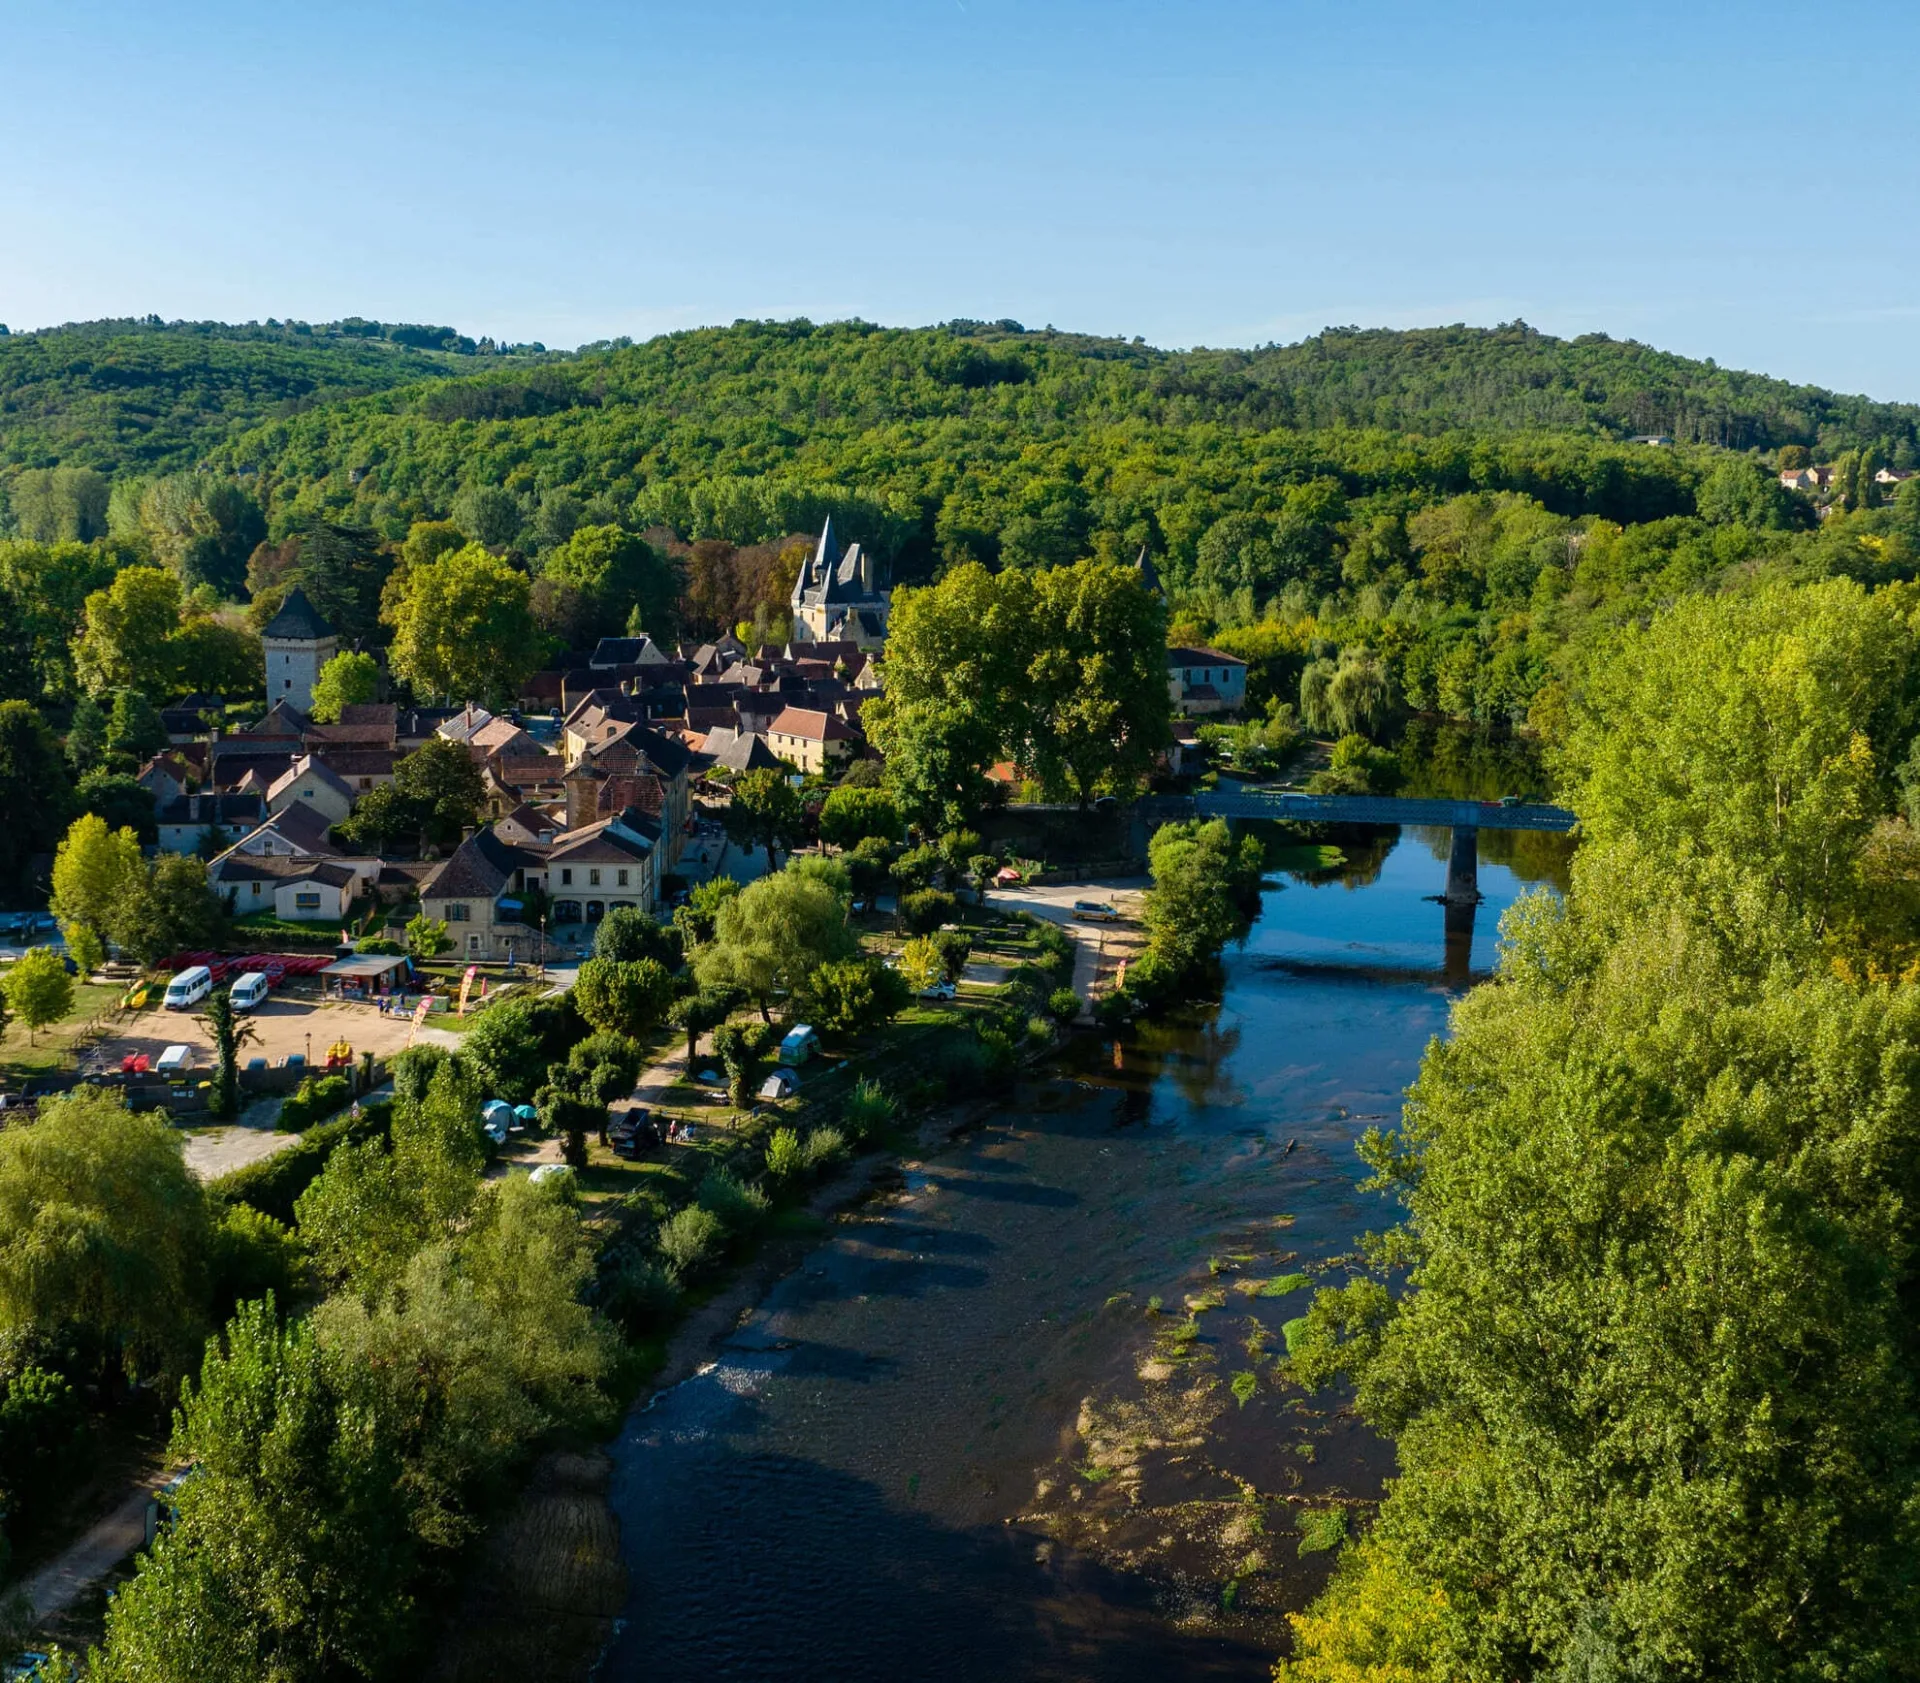 Village of Saint léon-sur-vézère